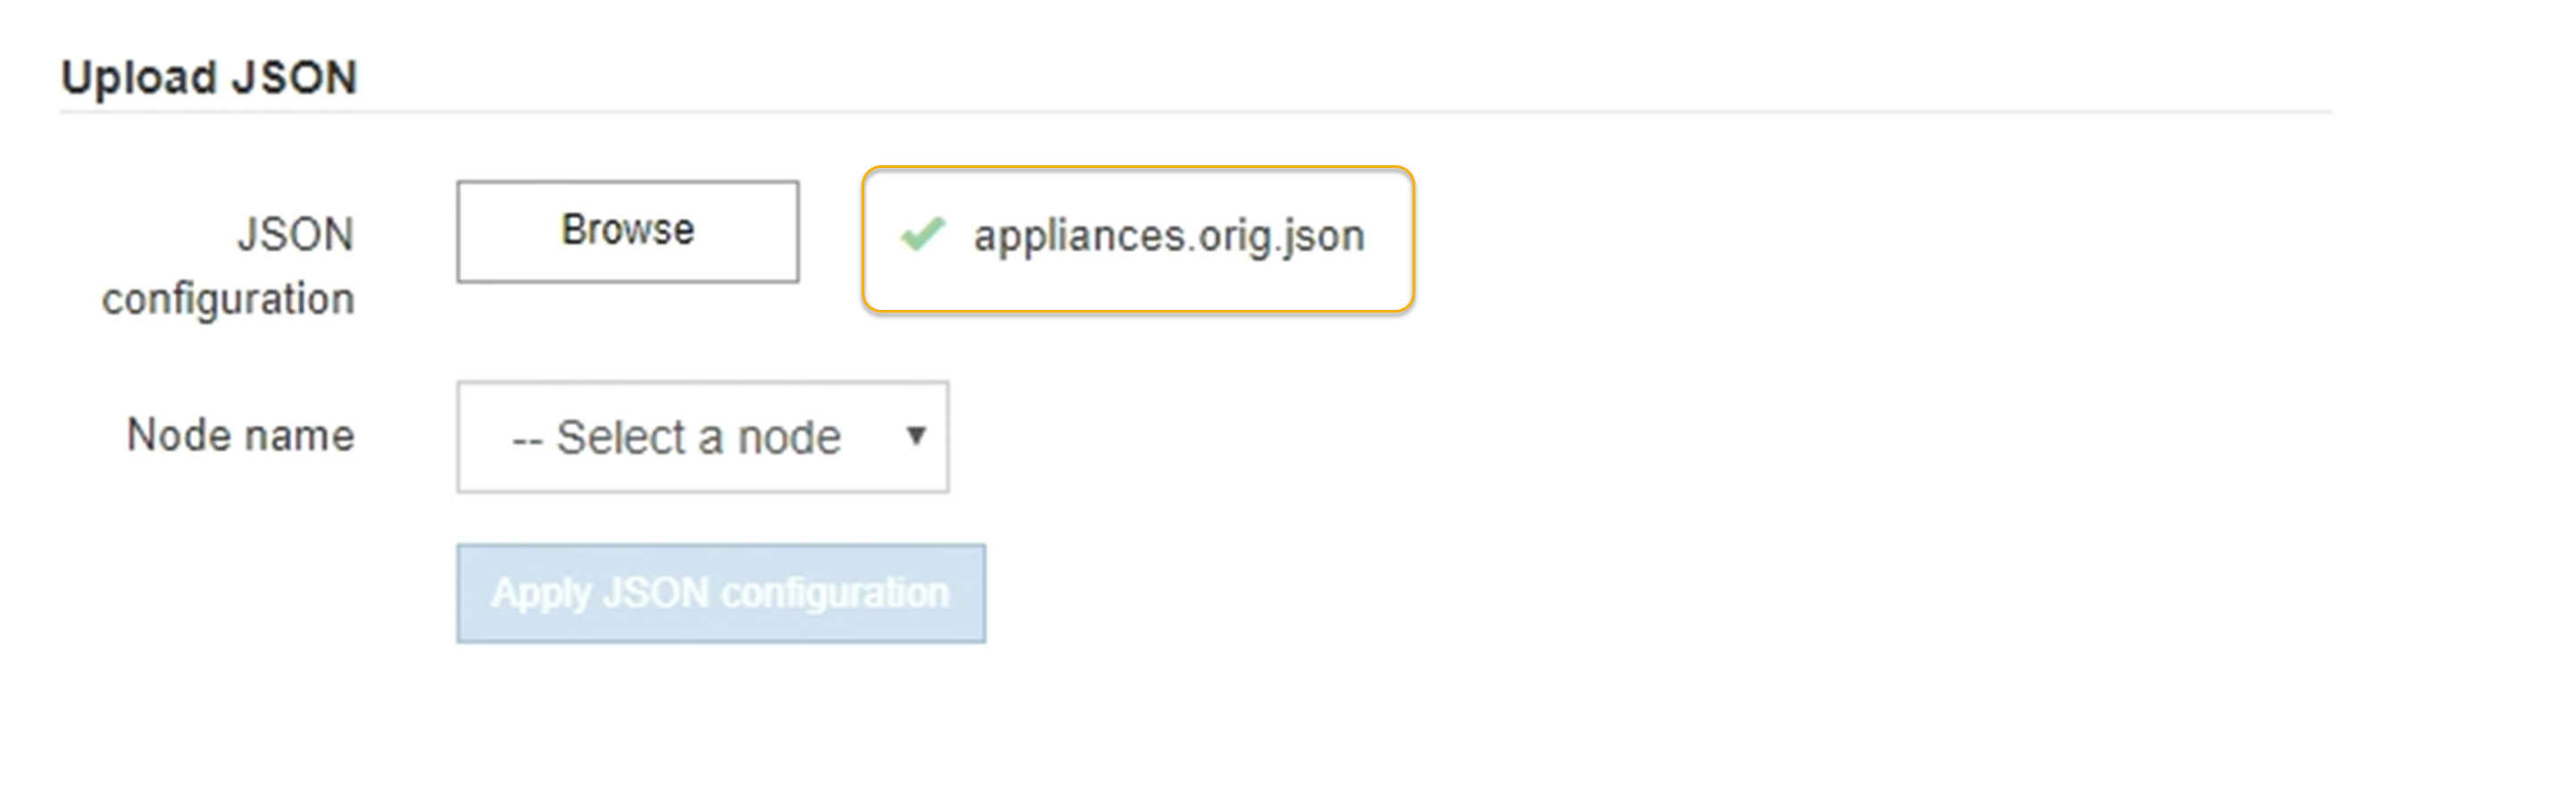 已上传更新设备配置 JSON